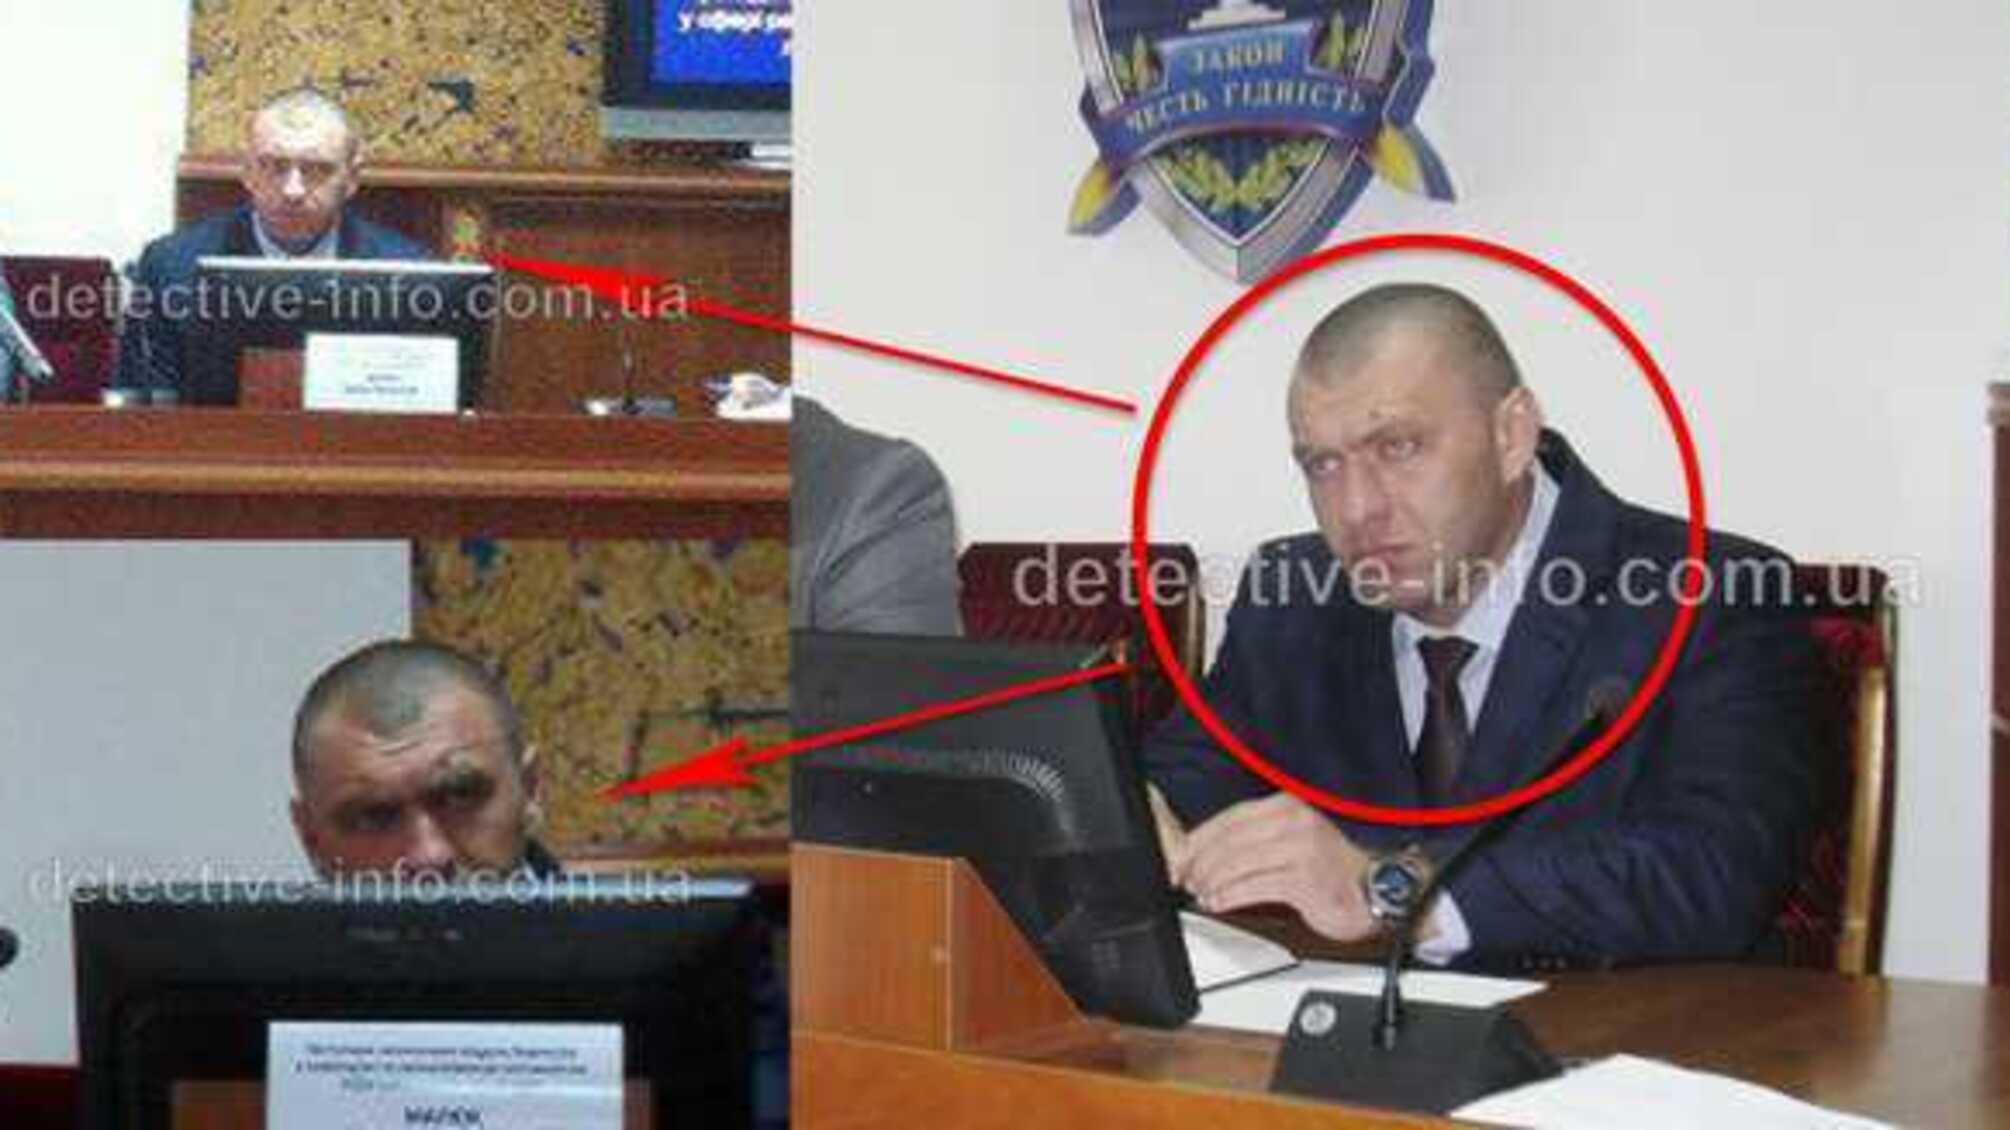 1-й заступник голови СБУ Василь Малюк зашкварився на чорному імпорті тютюну в порту Одеси